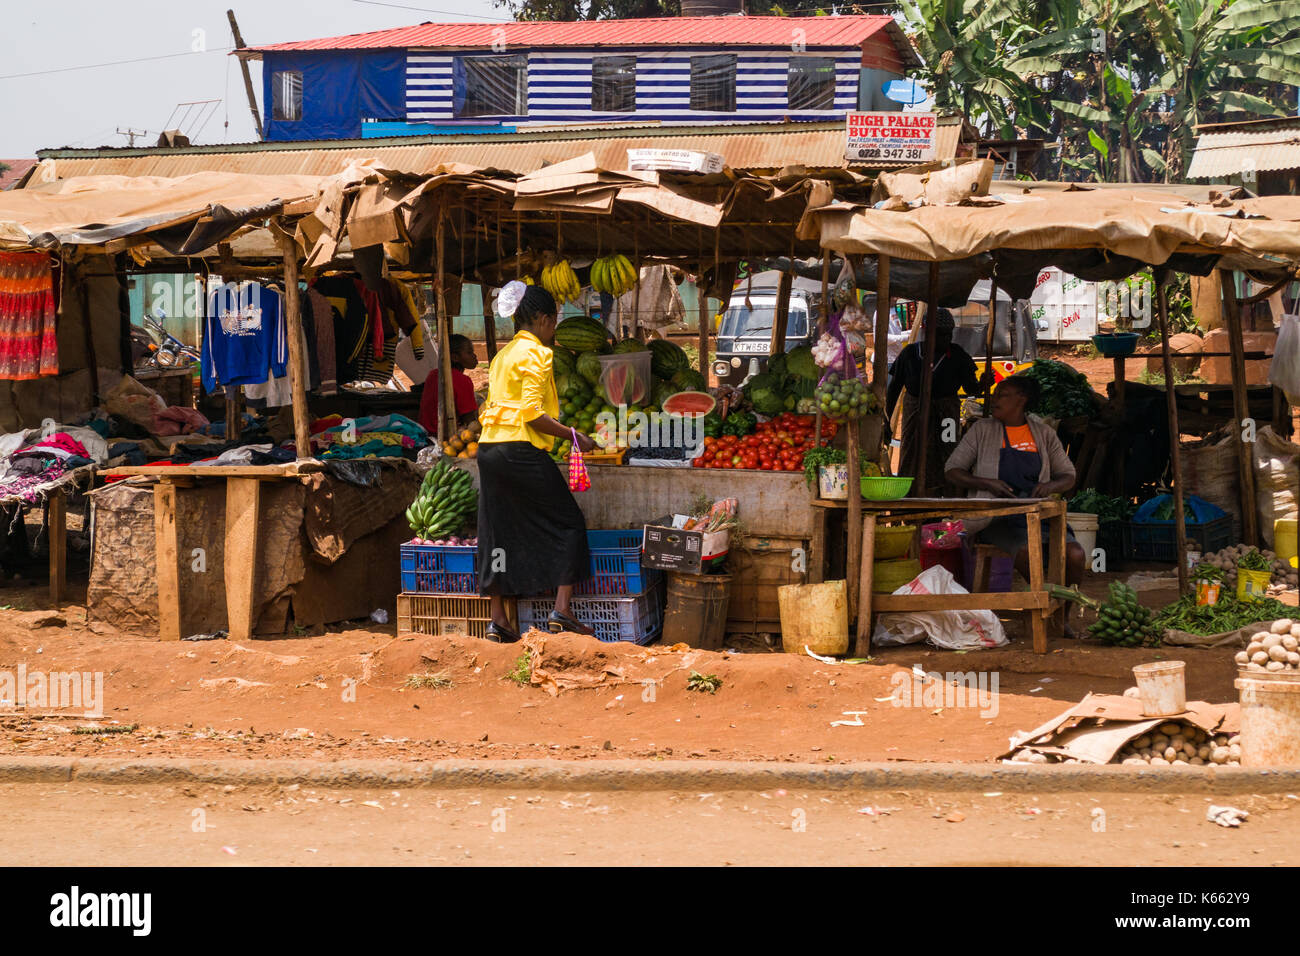 Mercato di frutta e verdura bancarelle con gente seduta e la navigazione, Kenya Foto Stock